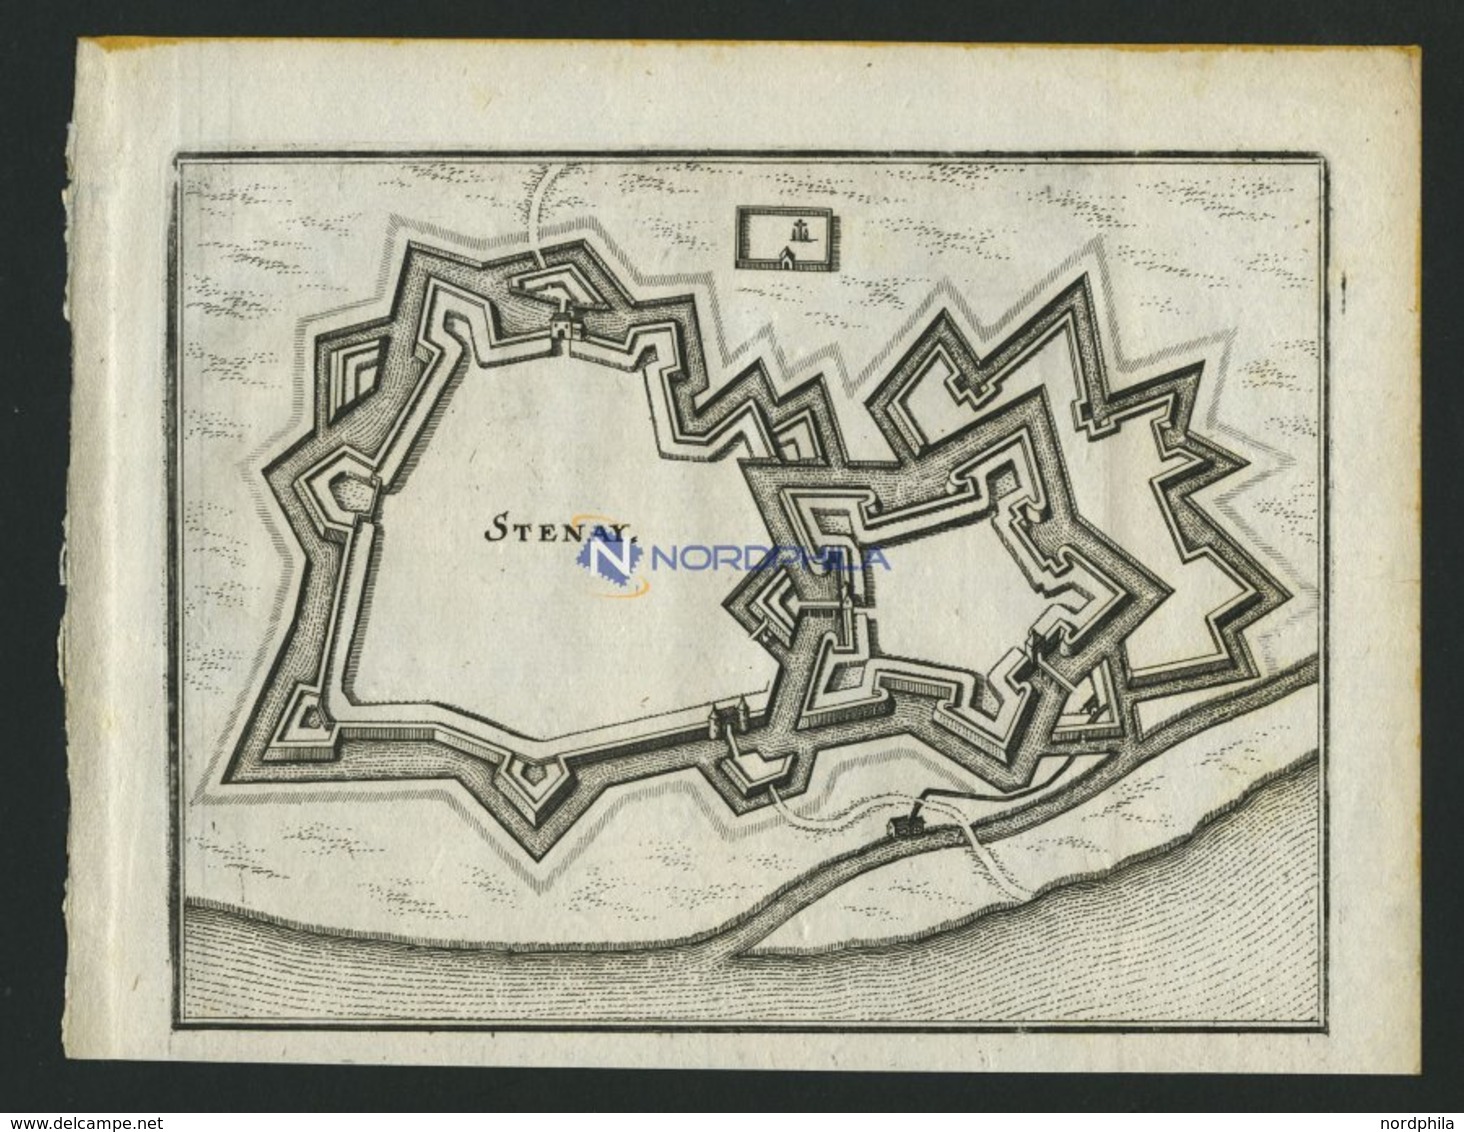 STENAY, Grundrißplan, Kupferstich Von Merian Um 1645 - Lithografieën